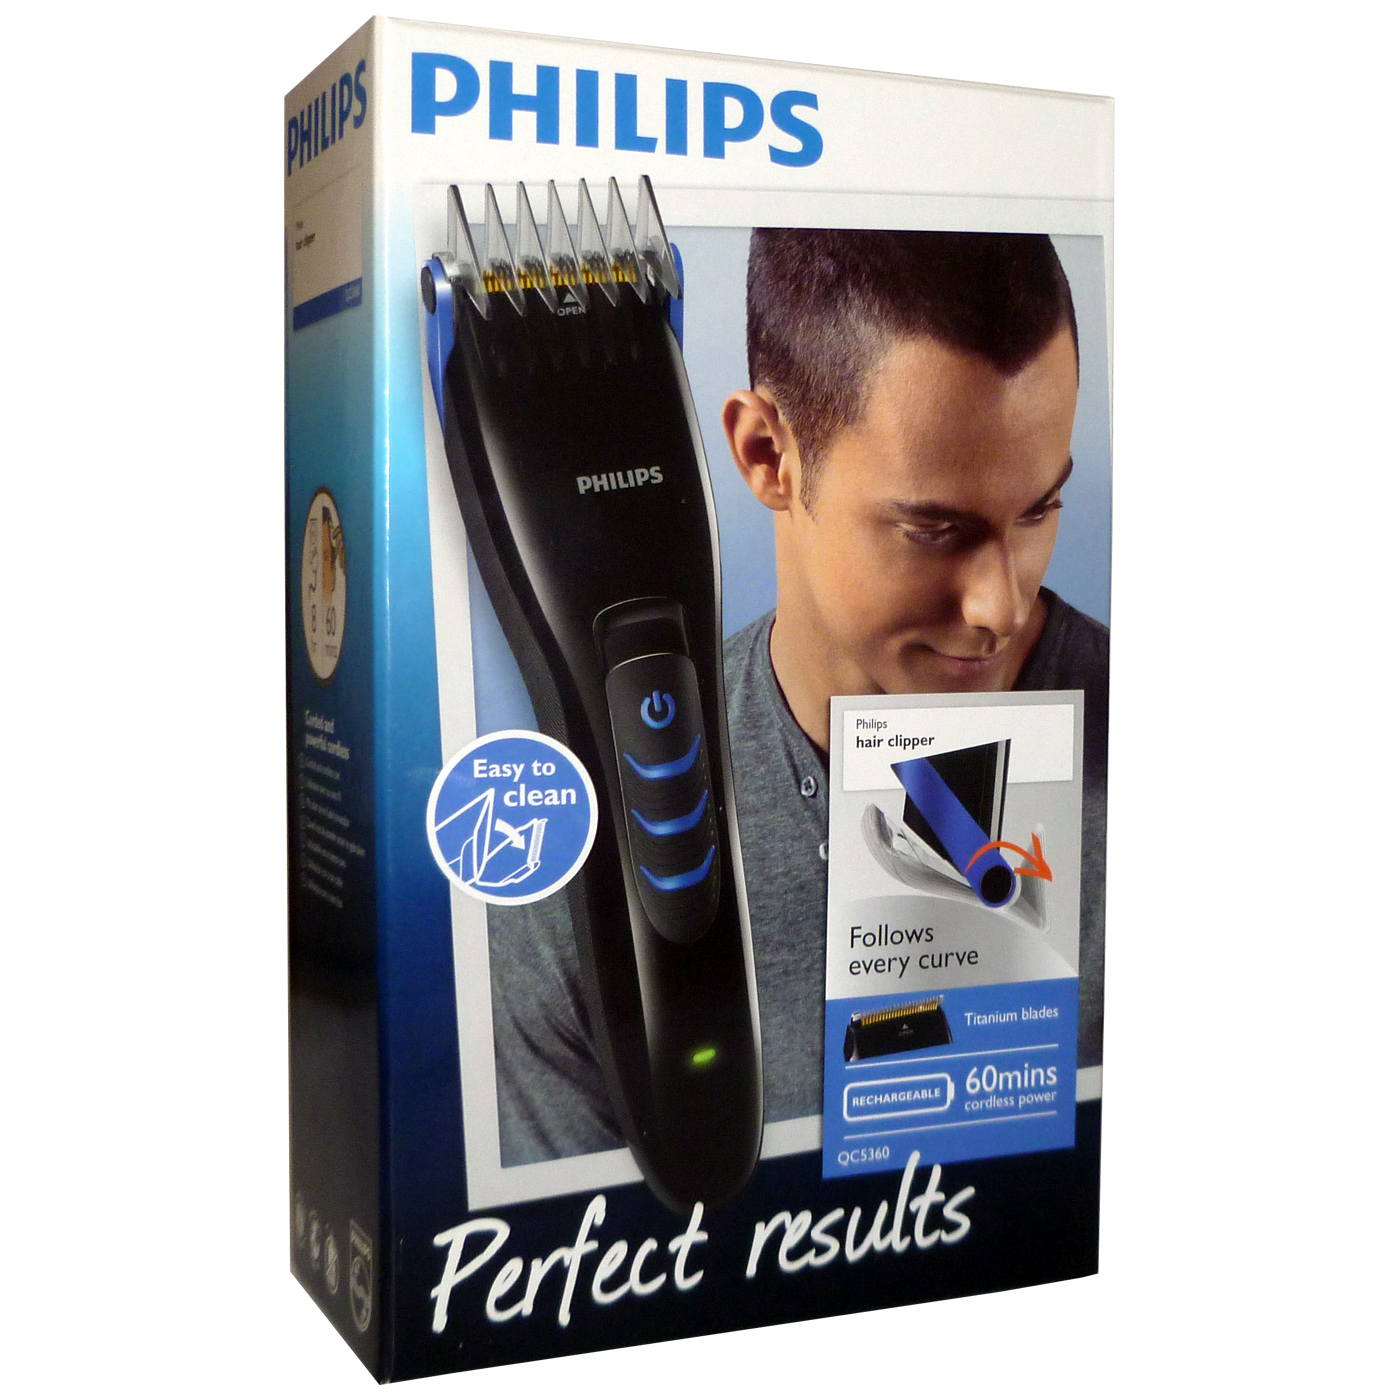 philips hair clipper qc5360